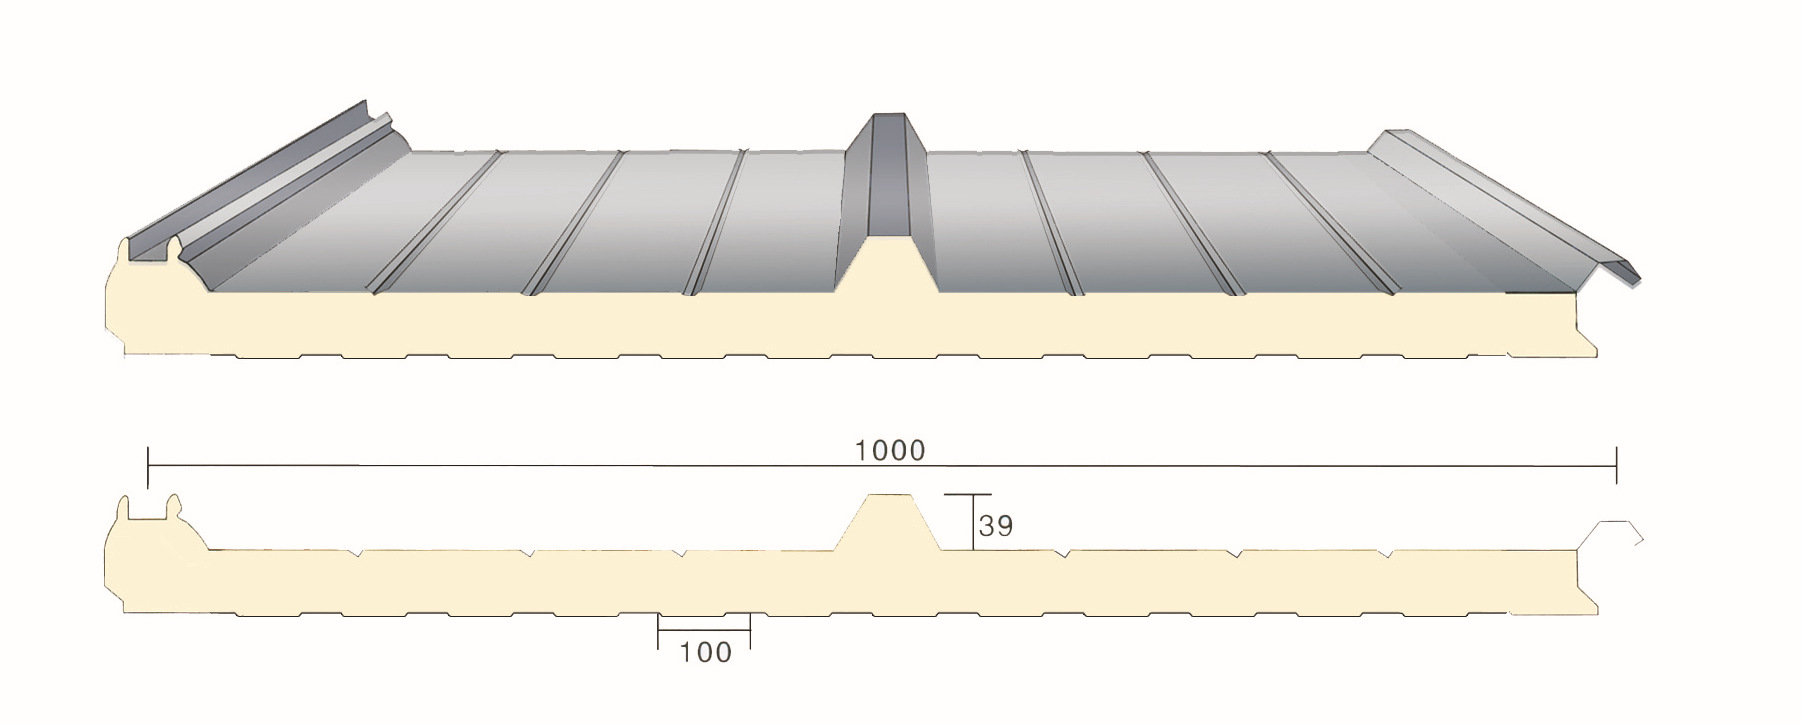 供应聚氨酯彩钢板聚氨酯夹芯板聚氨酯墙面板聚氨酯屋面板